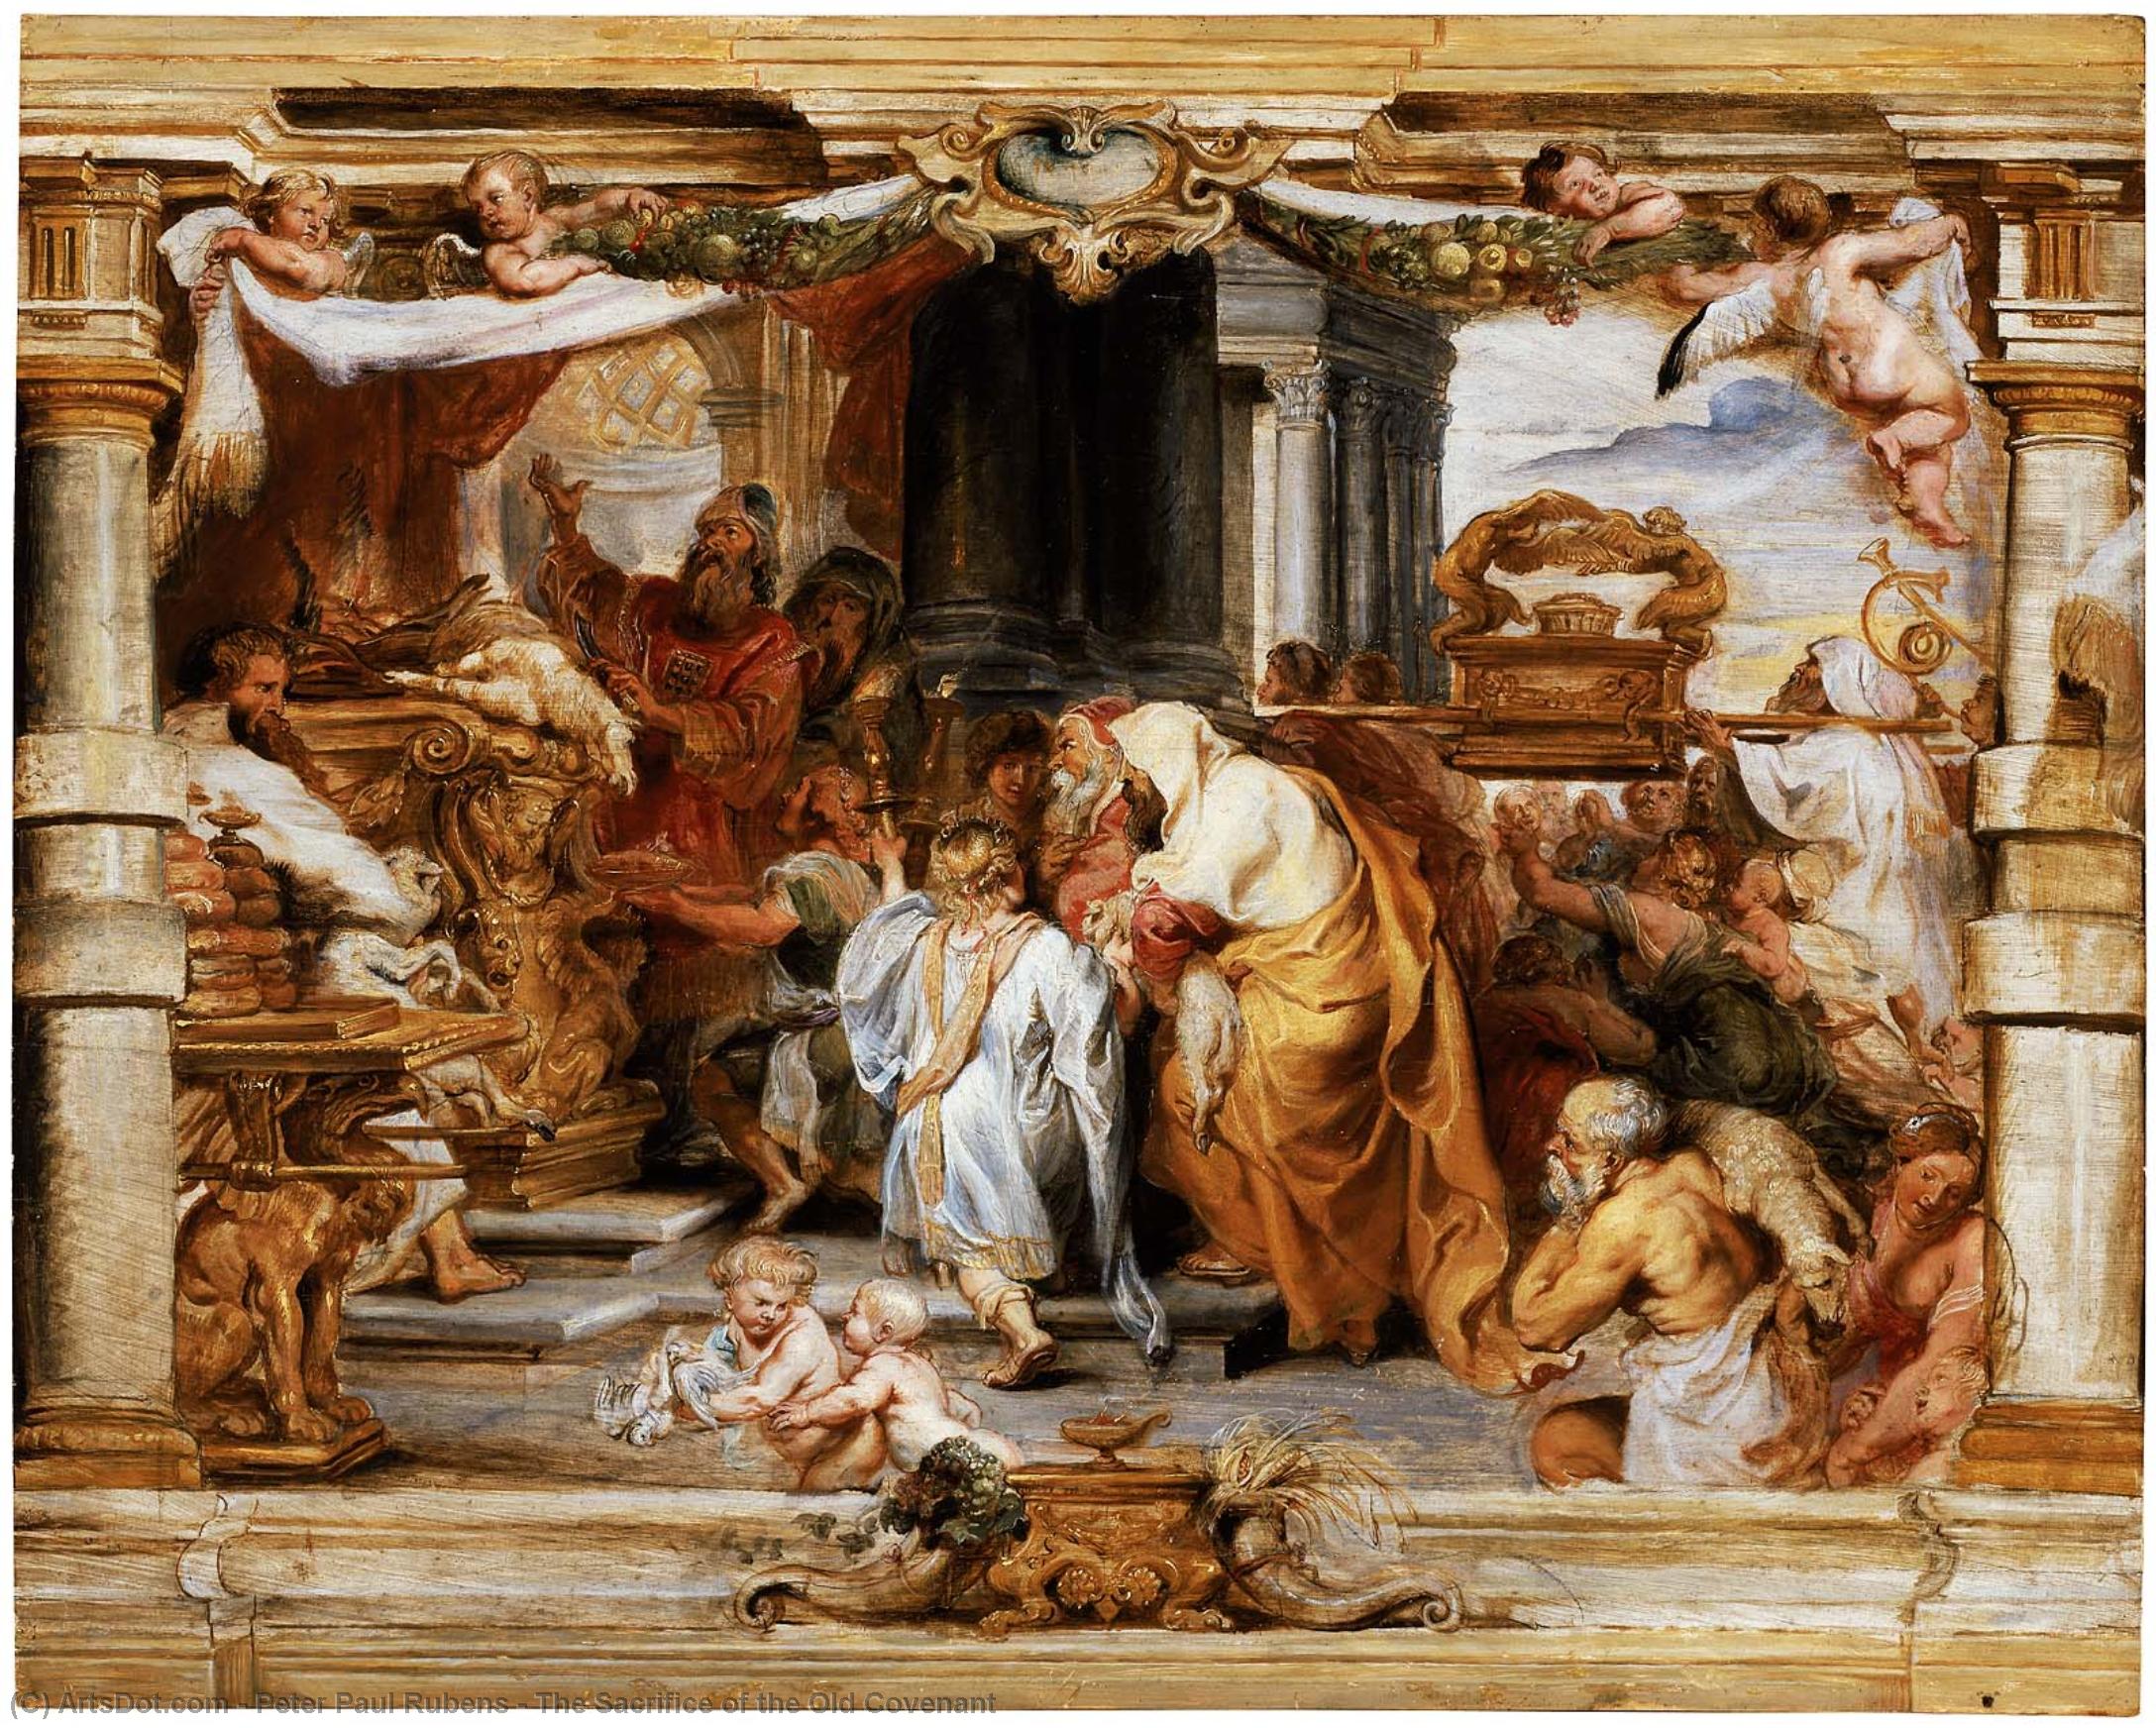 WikiOO.org - Enciklopedija dailės - Tapyba, meno kuriniai Peter Paul Rubens - The Sacrifice of the Old Covenant